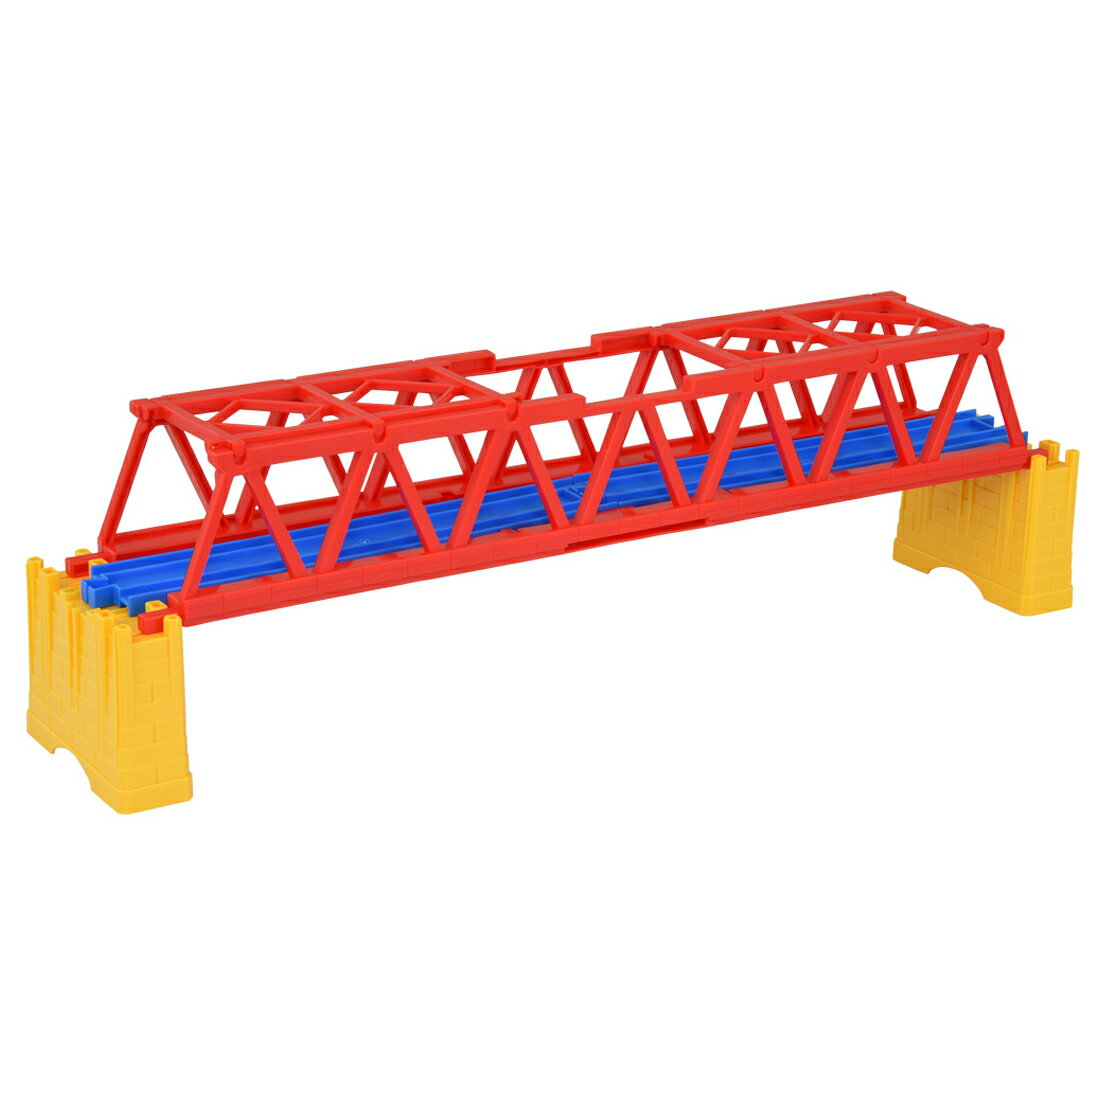 プラレール J-12 こせんきょう プラレール情景パーツ 跨線橋 鉄道玩具 電車 鉄道模型 男の子 プレゼント 誕生日 プレゼント タカラトミー